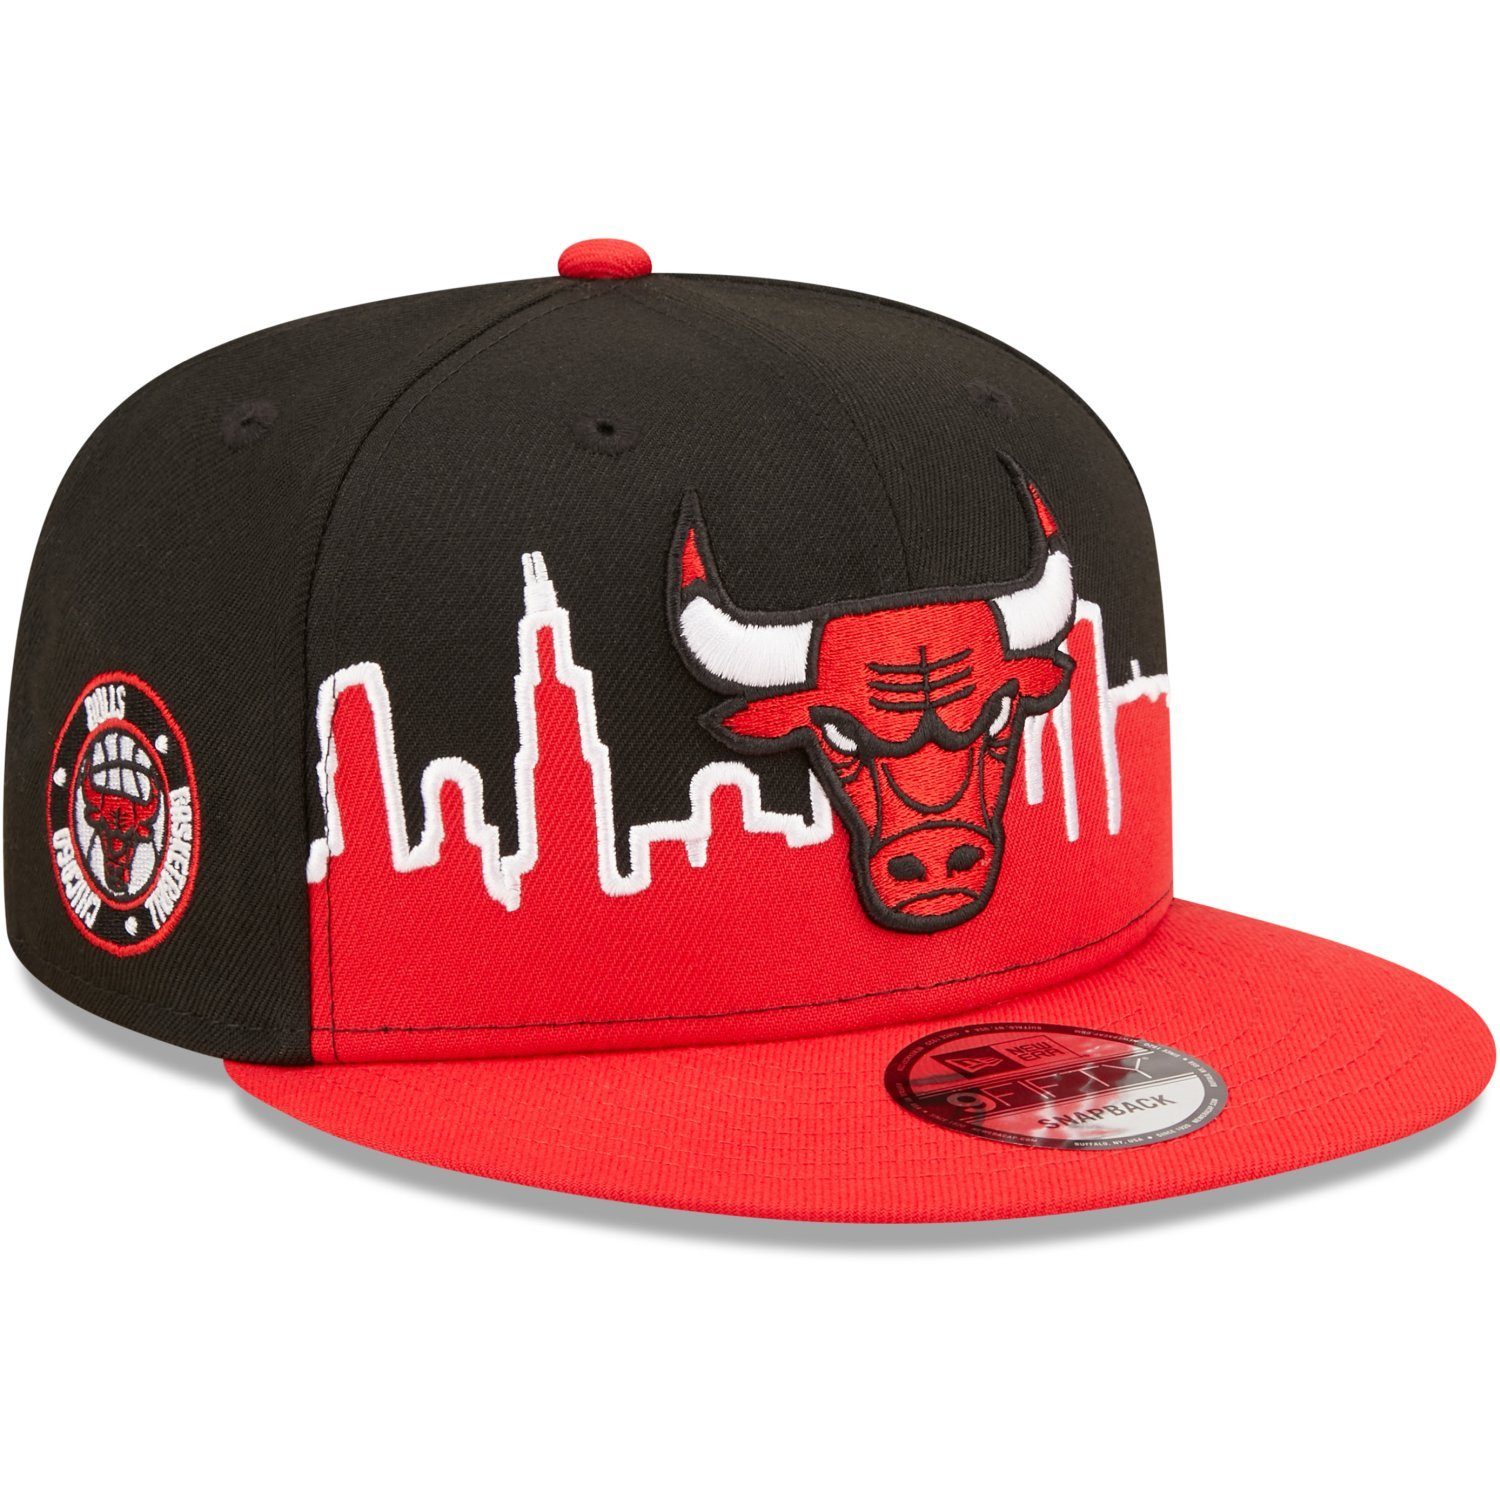 Snapback Bulls Cap Era Chicago TIPOFF NBA 9FIFTY New